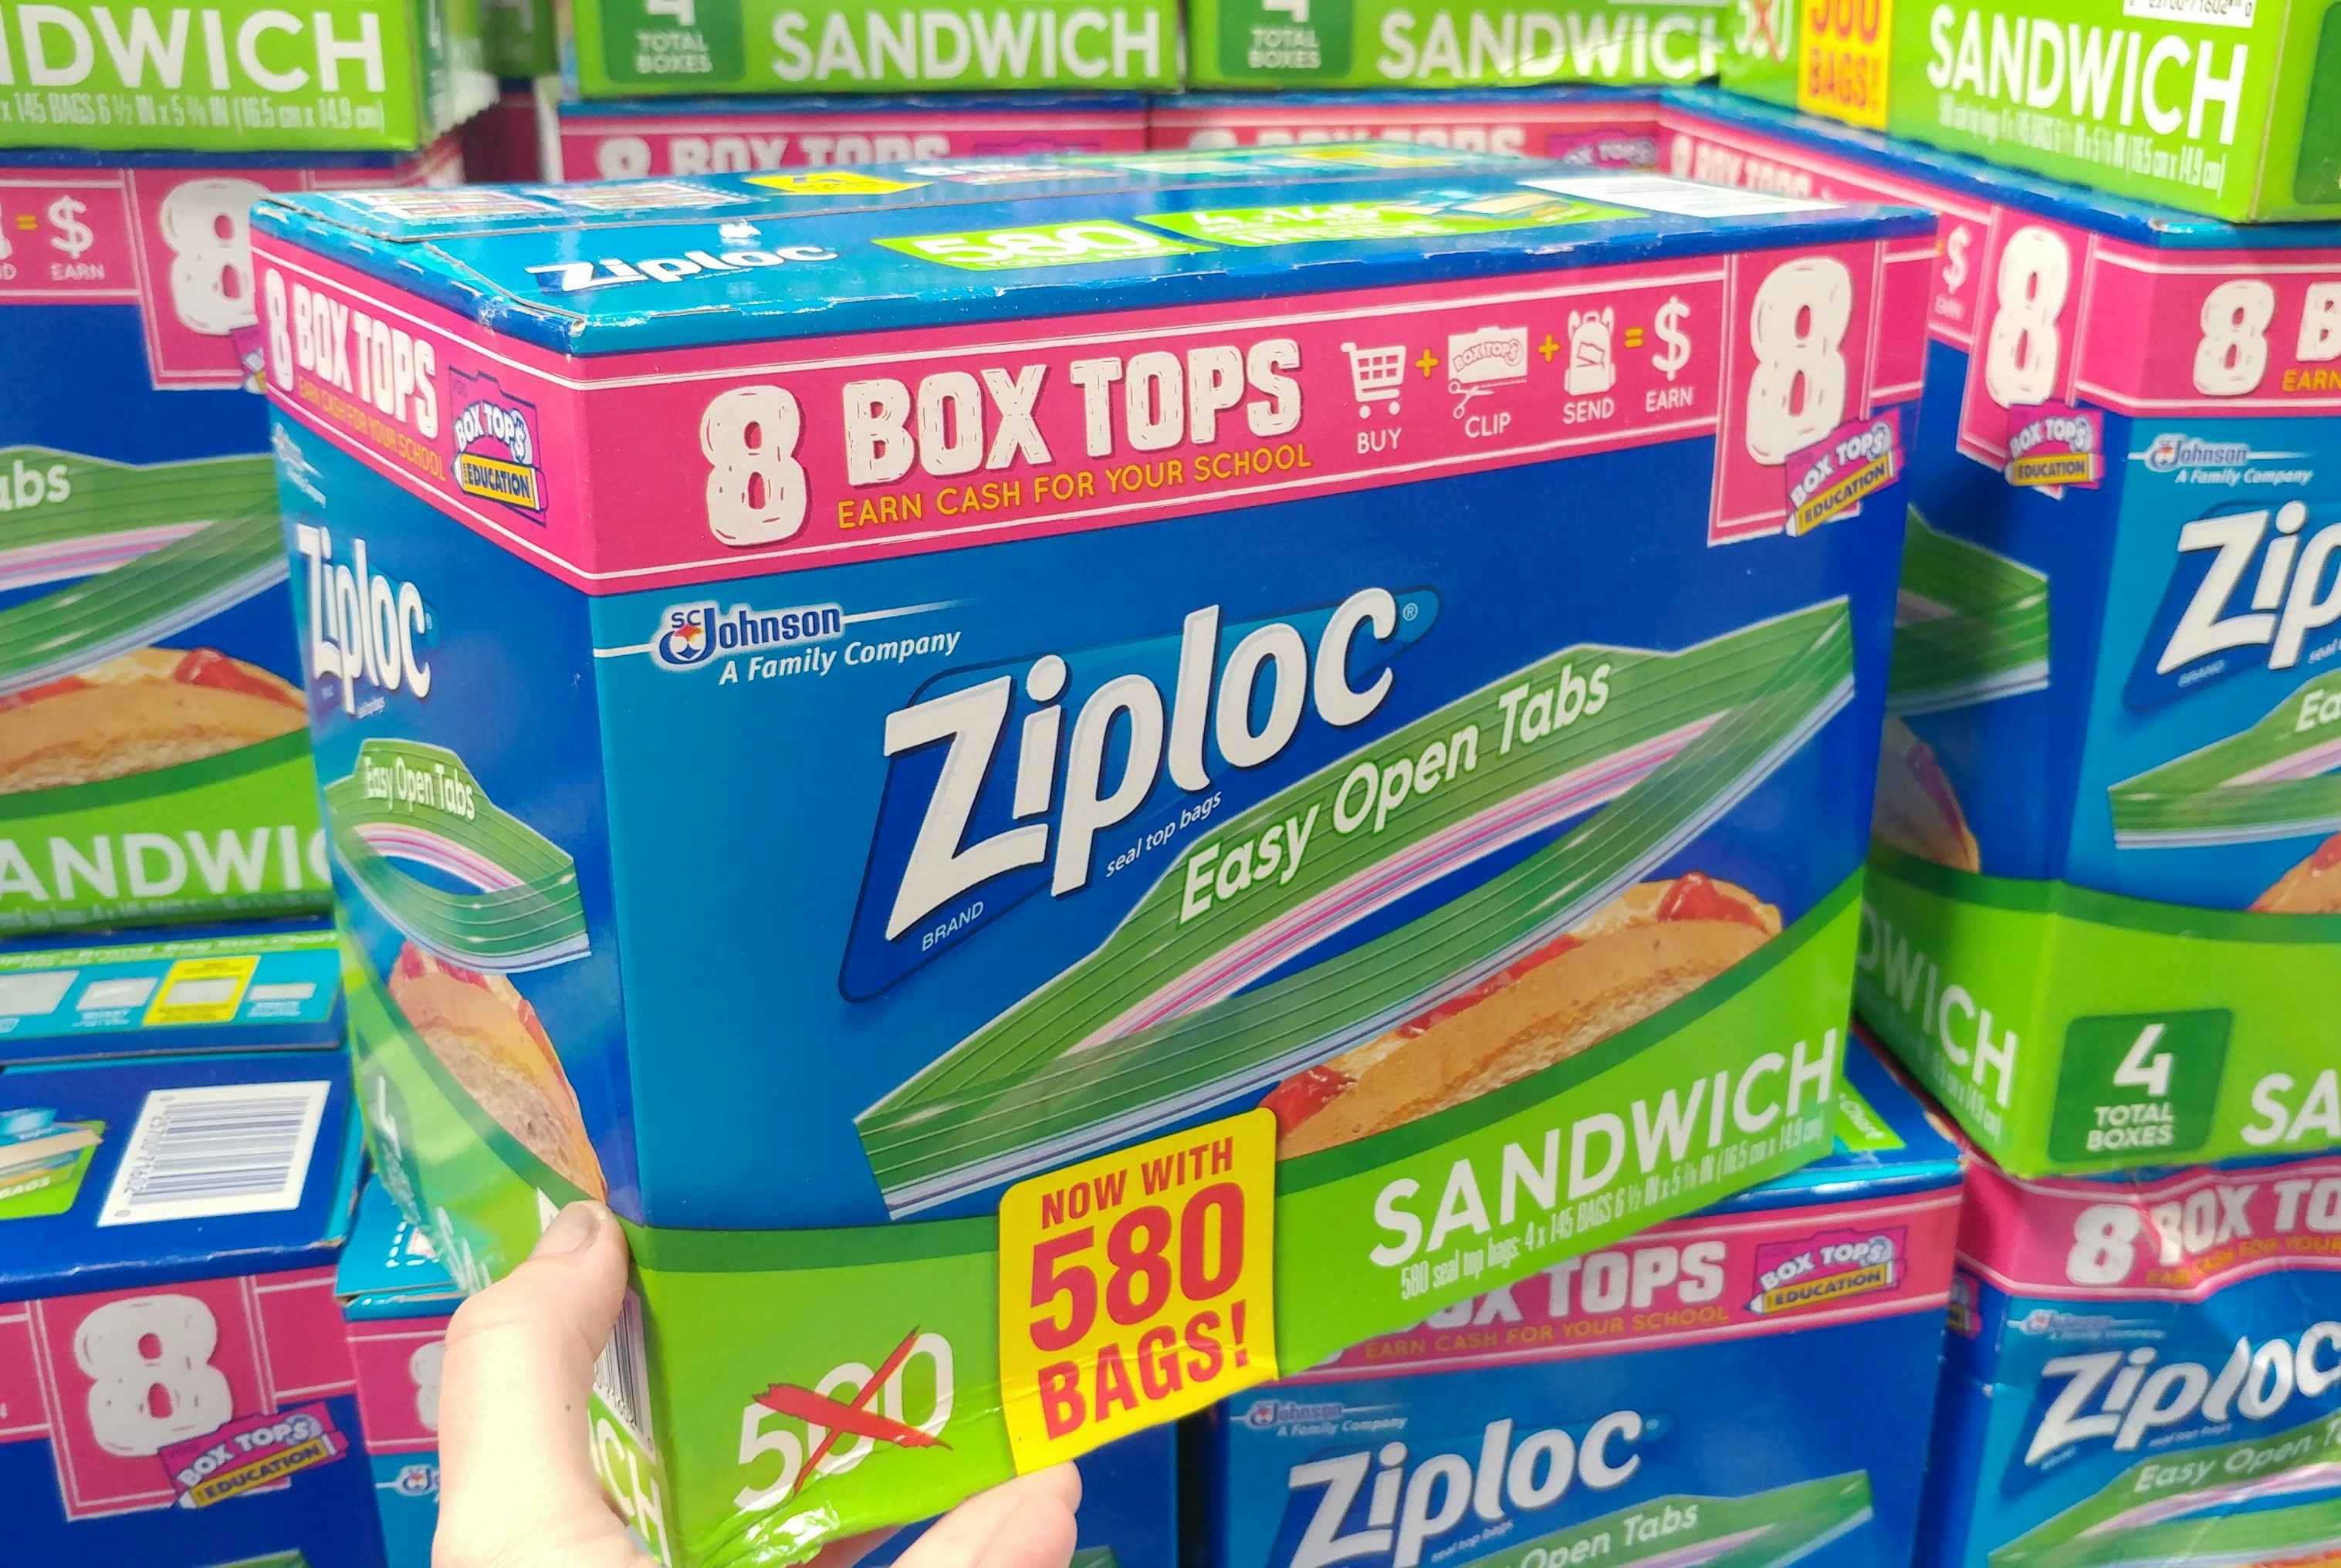 Ziploc Sandwich Bag (580 Count)